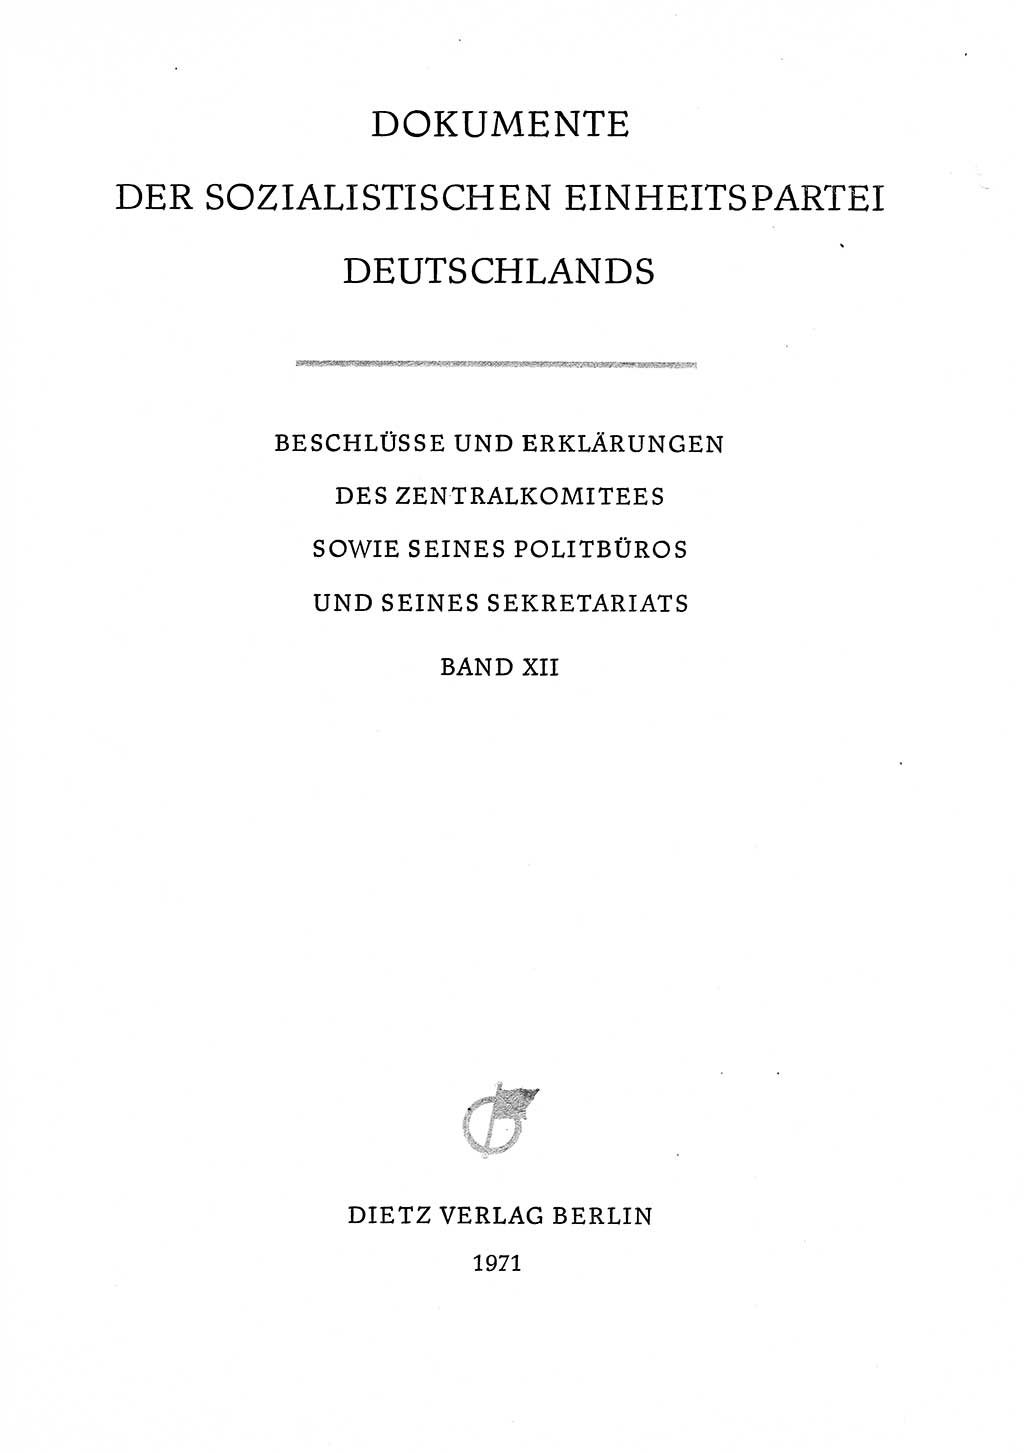 Dokumente der Sozialistischen Einheitspartei Deutschlands (SED) [Deutsche Demokratische Republik (DDR)] 1968-1969, Seite 3 (Dok. SED DDR 1968-1969, S. 3)